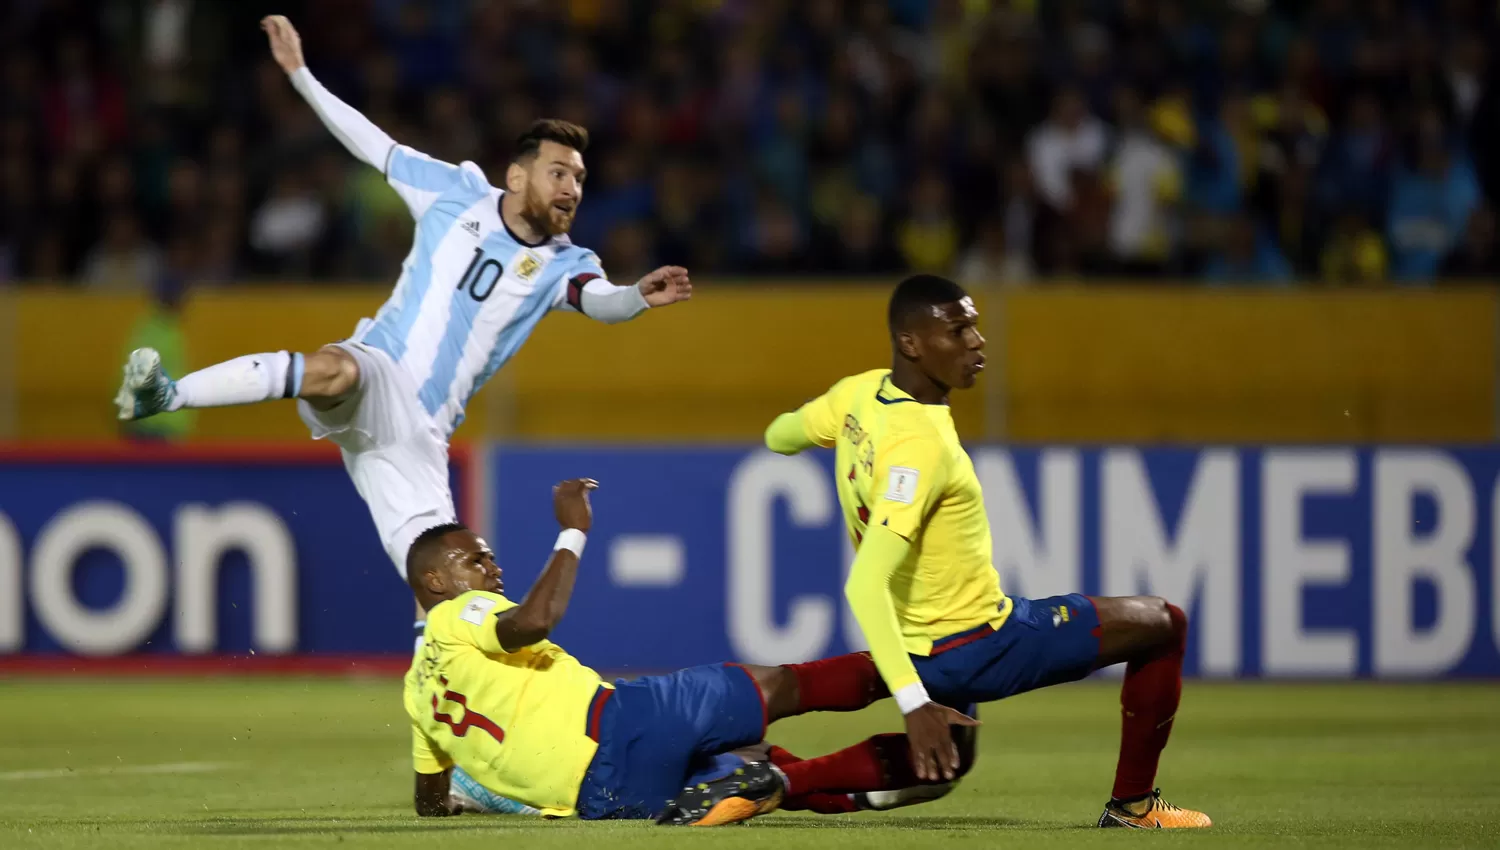 ADENTRO. Messi pateó y encontró la red. (REUTERS)